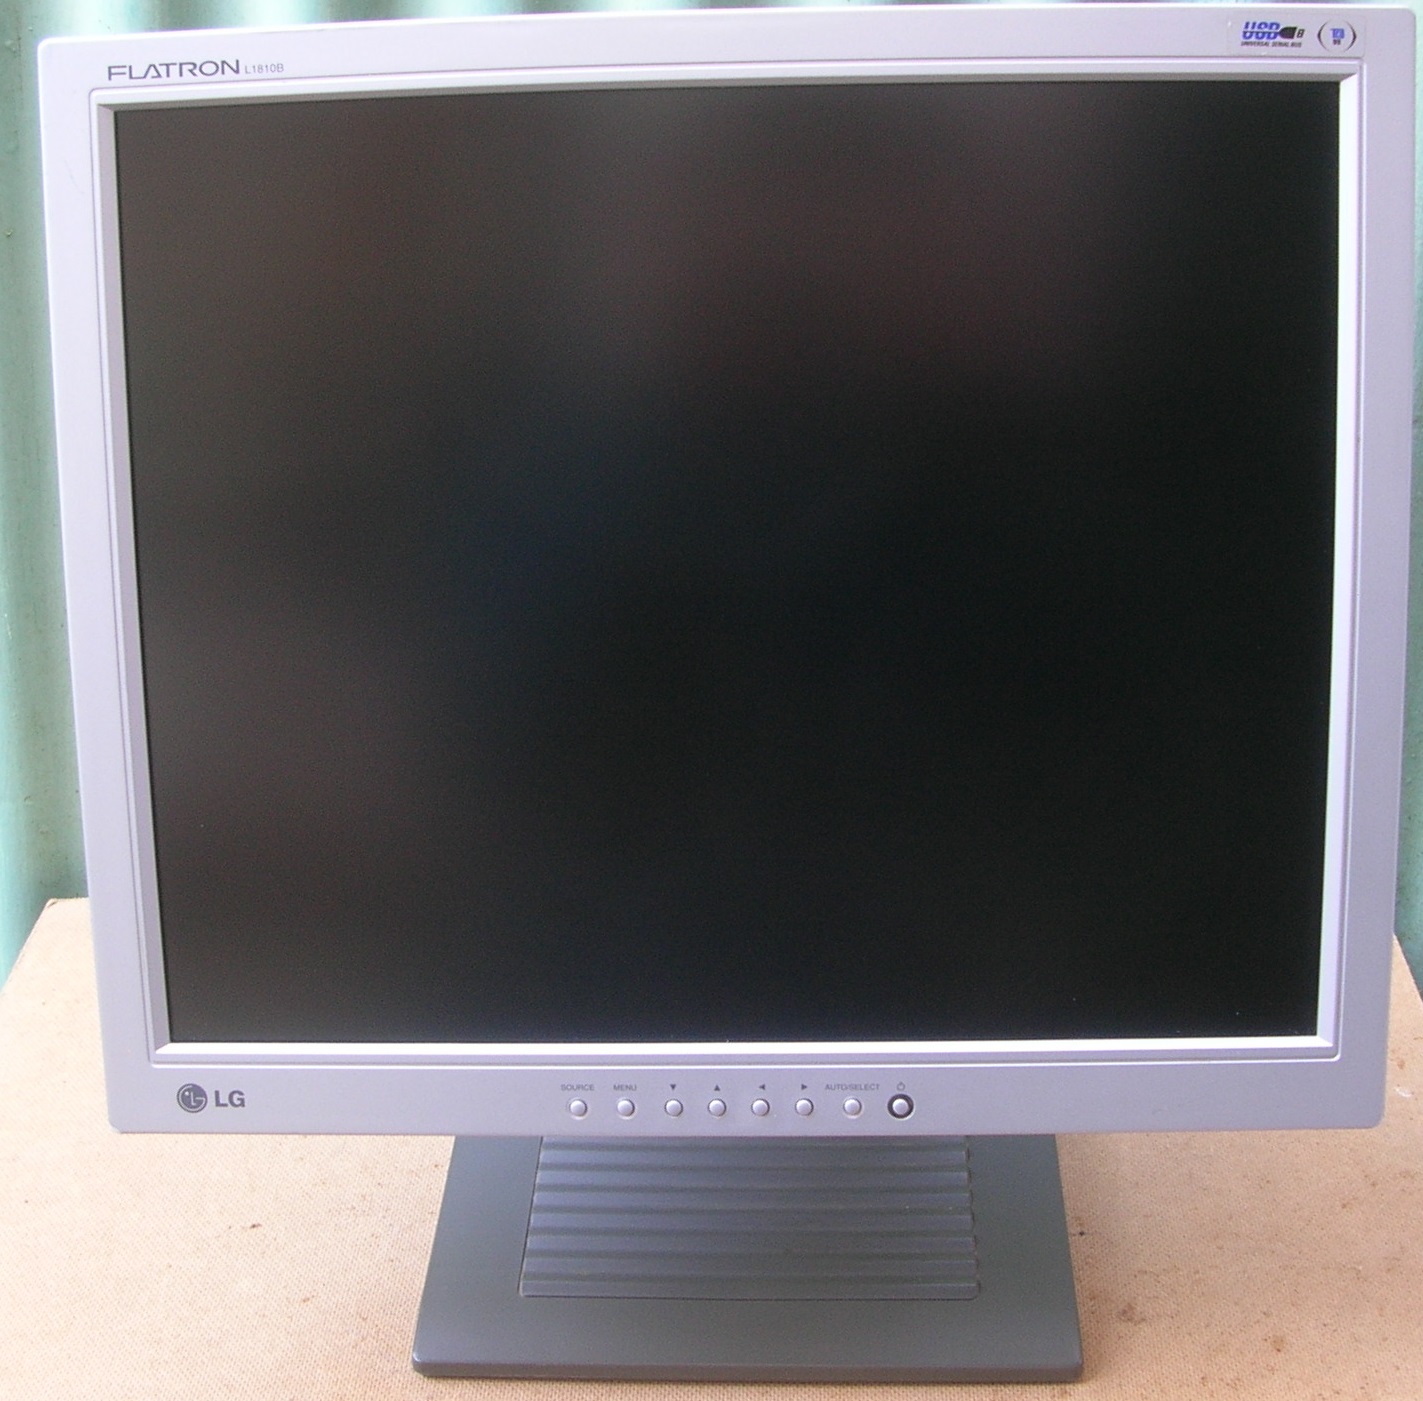 LG FLATRON L1810B LCD MONITOR